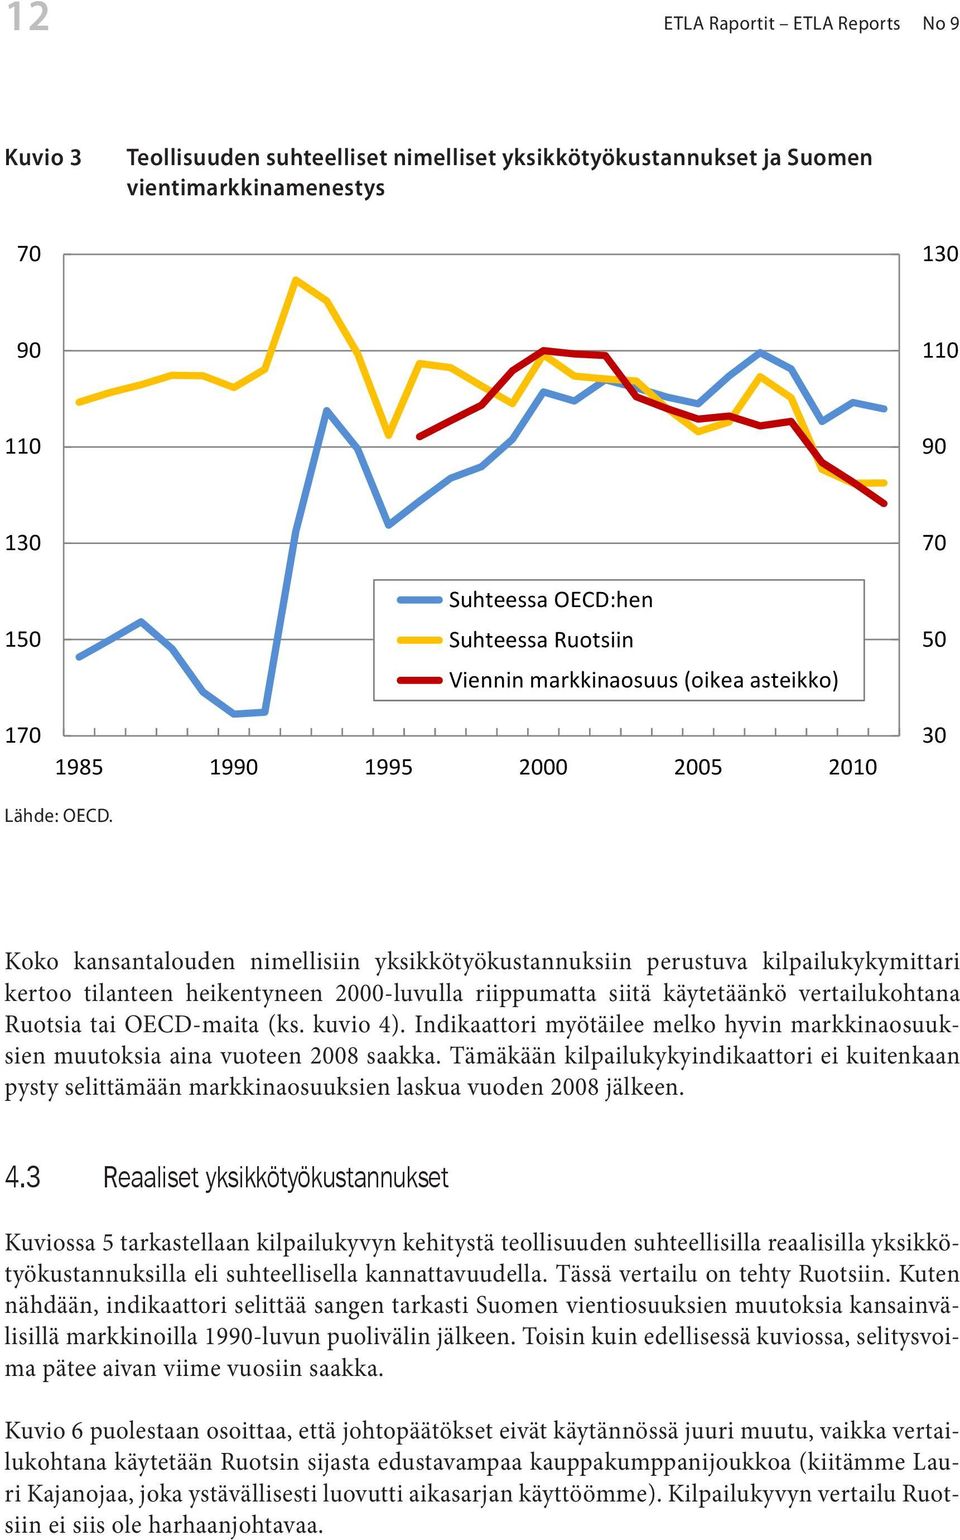 Koko kansantalouden nimellisiin yksikkötyökustannuksiin perustuva kilpailukykymittari kertoo tilanteen heikentyneen 2000-luvulla riippumatta siitä käytetäänkö vertailukohtana Ruotsia tai OECD-maita